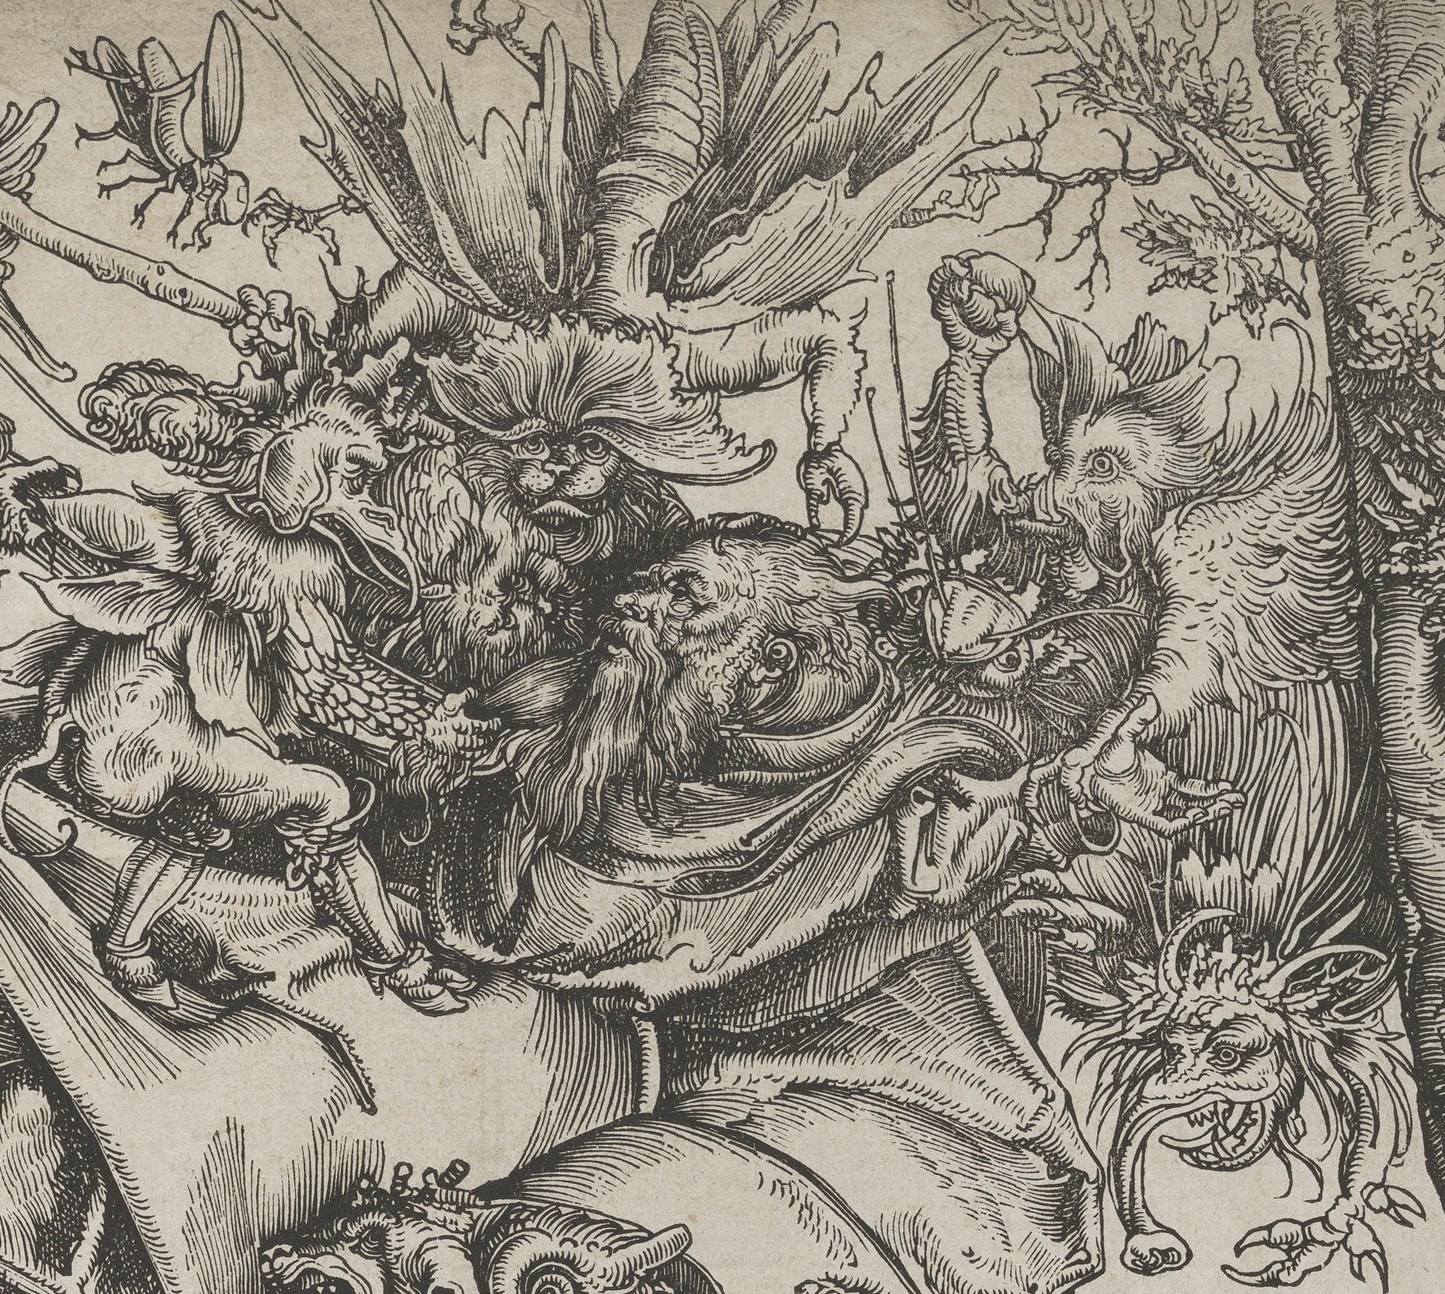 1509-cranach-stanthony-det.jpg